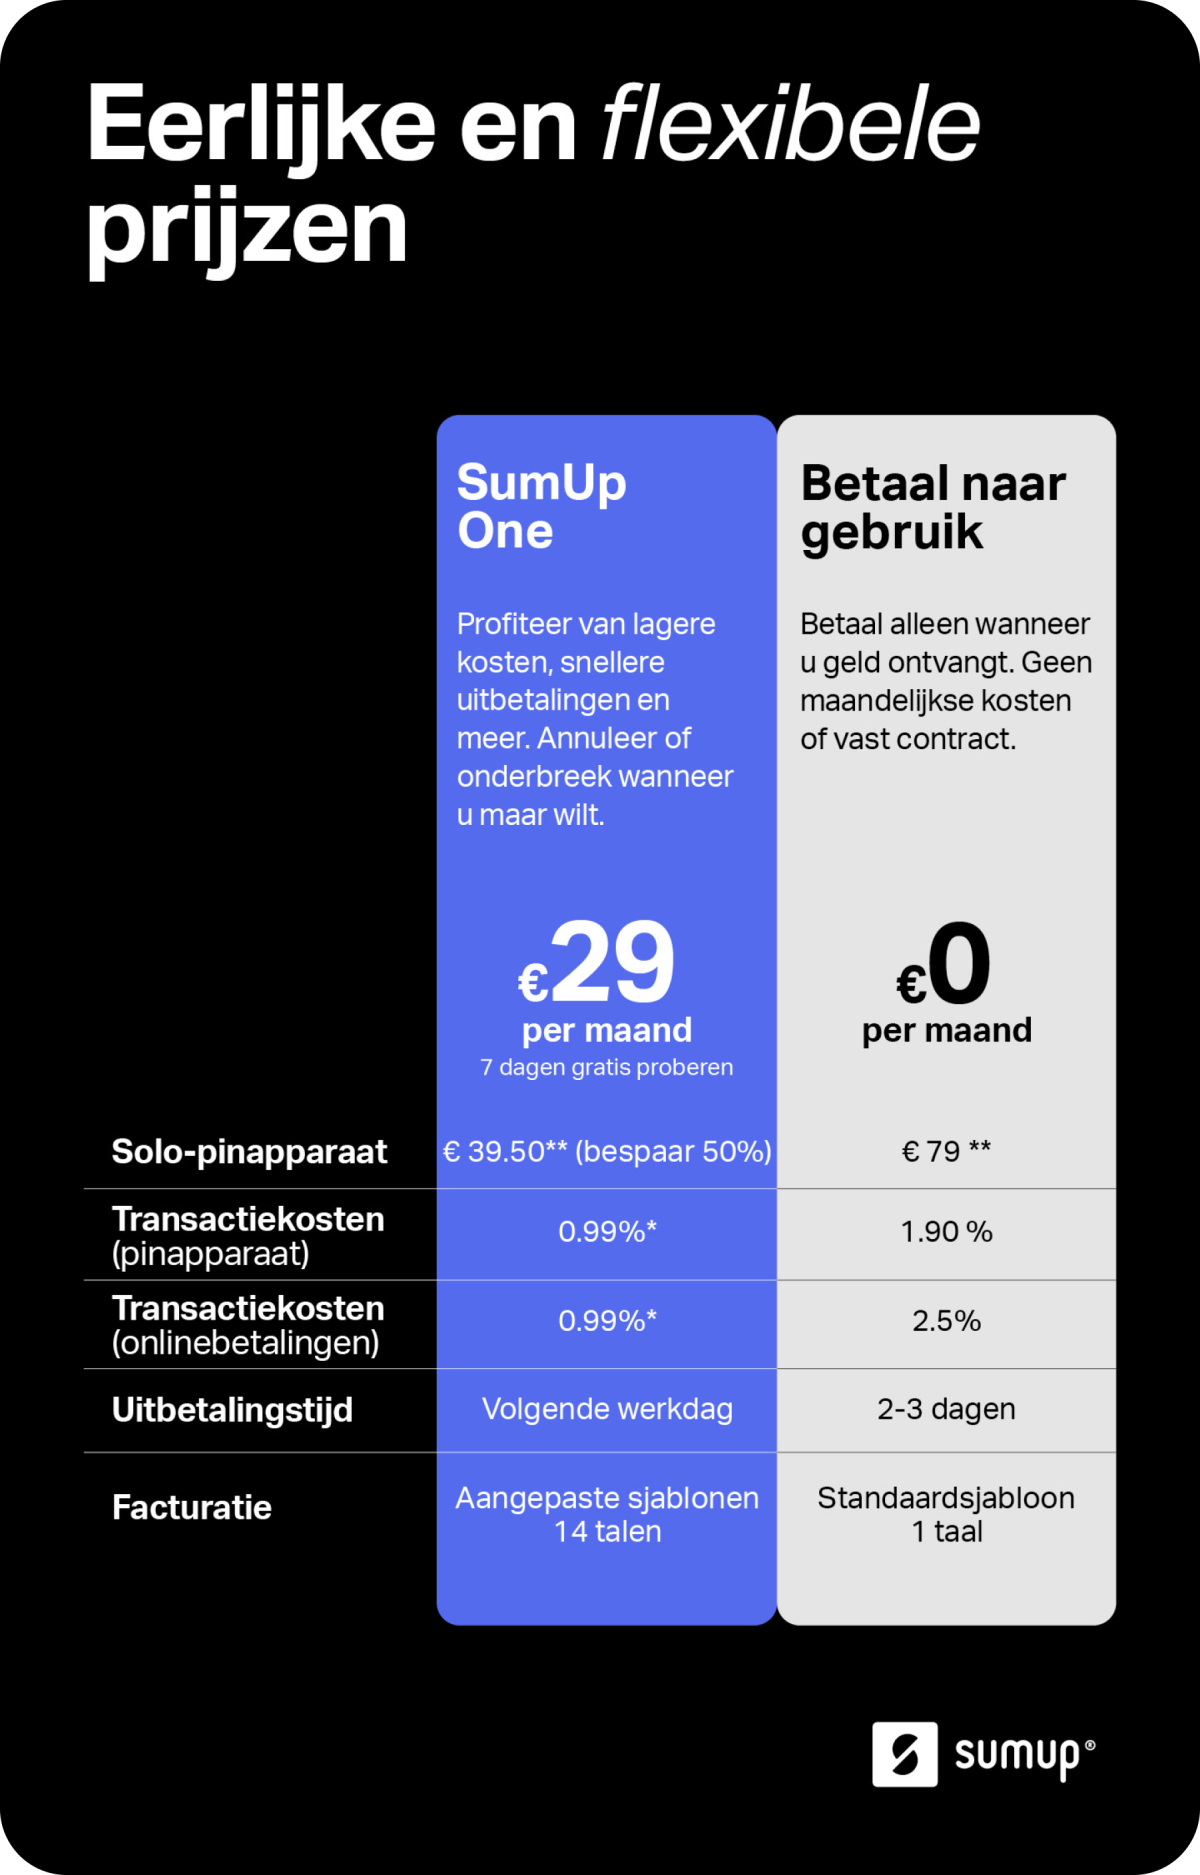 Afbeelding met overzicht van de verschillen tussen SumUp One en de optie om te betalen voor gebruik. Kies SumUp One voor 50% korting op een SumUp Solo, lagere transactiekosten, snelle uitbetalingen, uitgebreide factuursoftware en voorrang voor support.